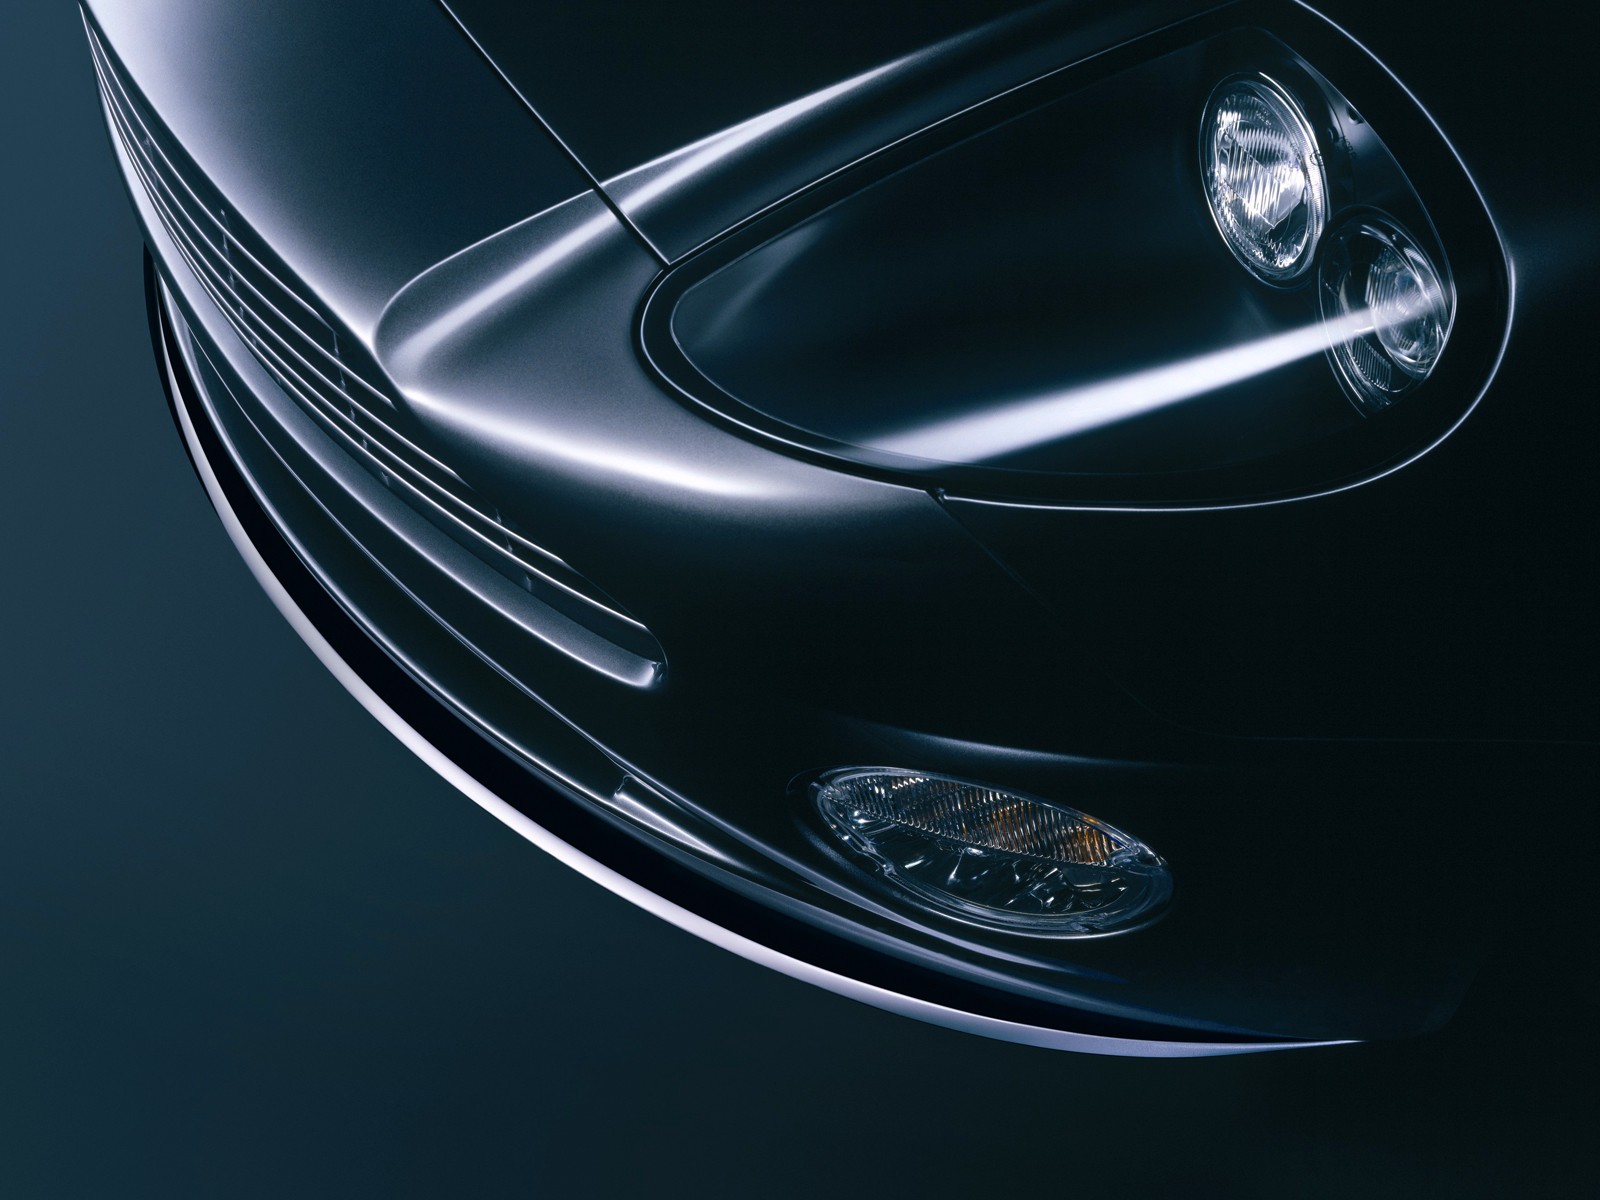 Aston Martin V12 Vanquish | HD Wallpapers